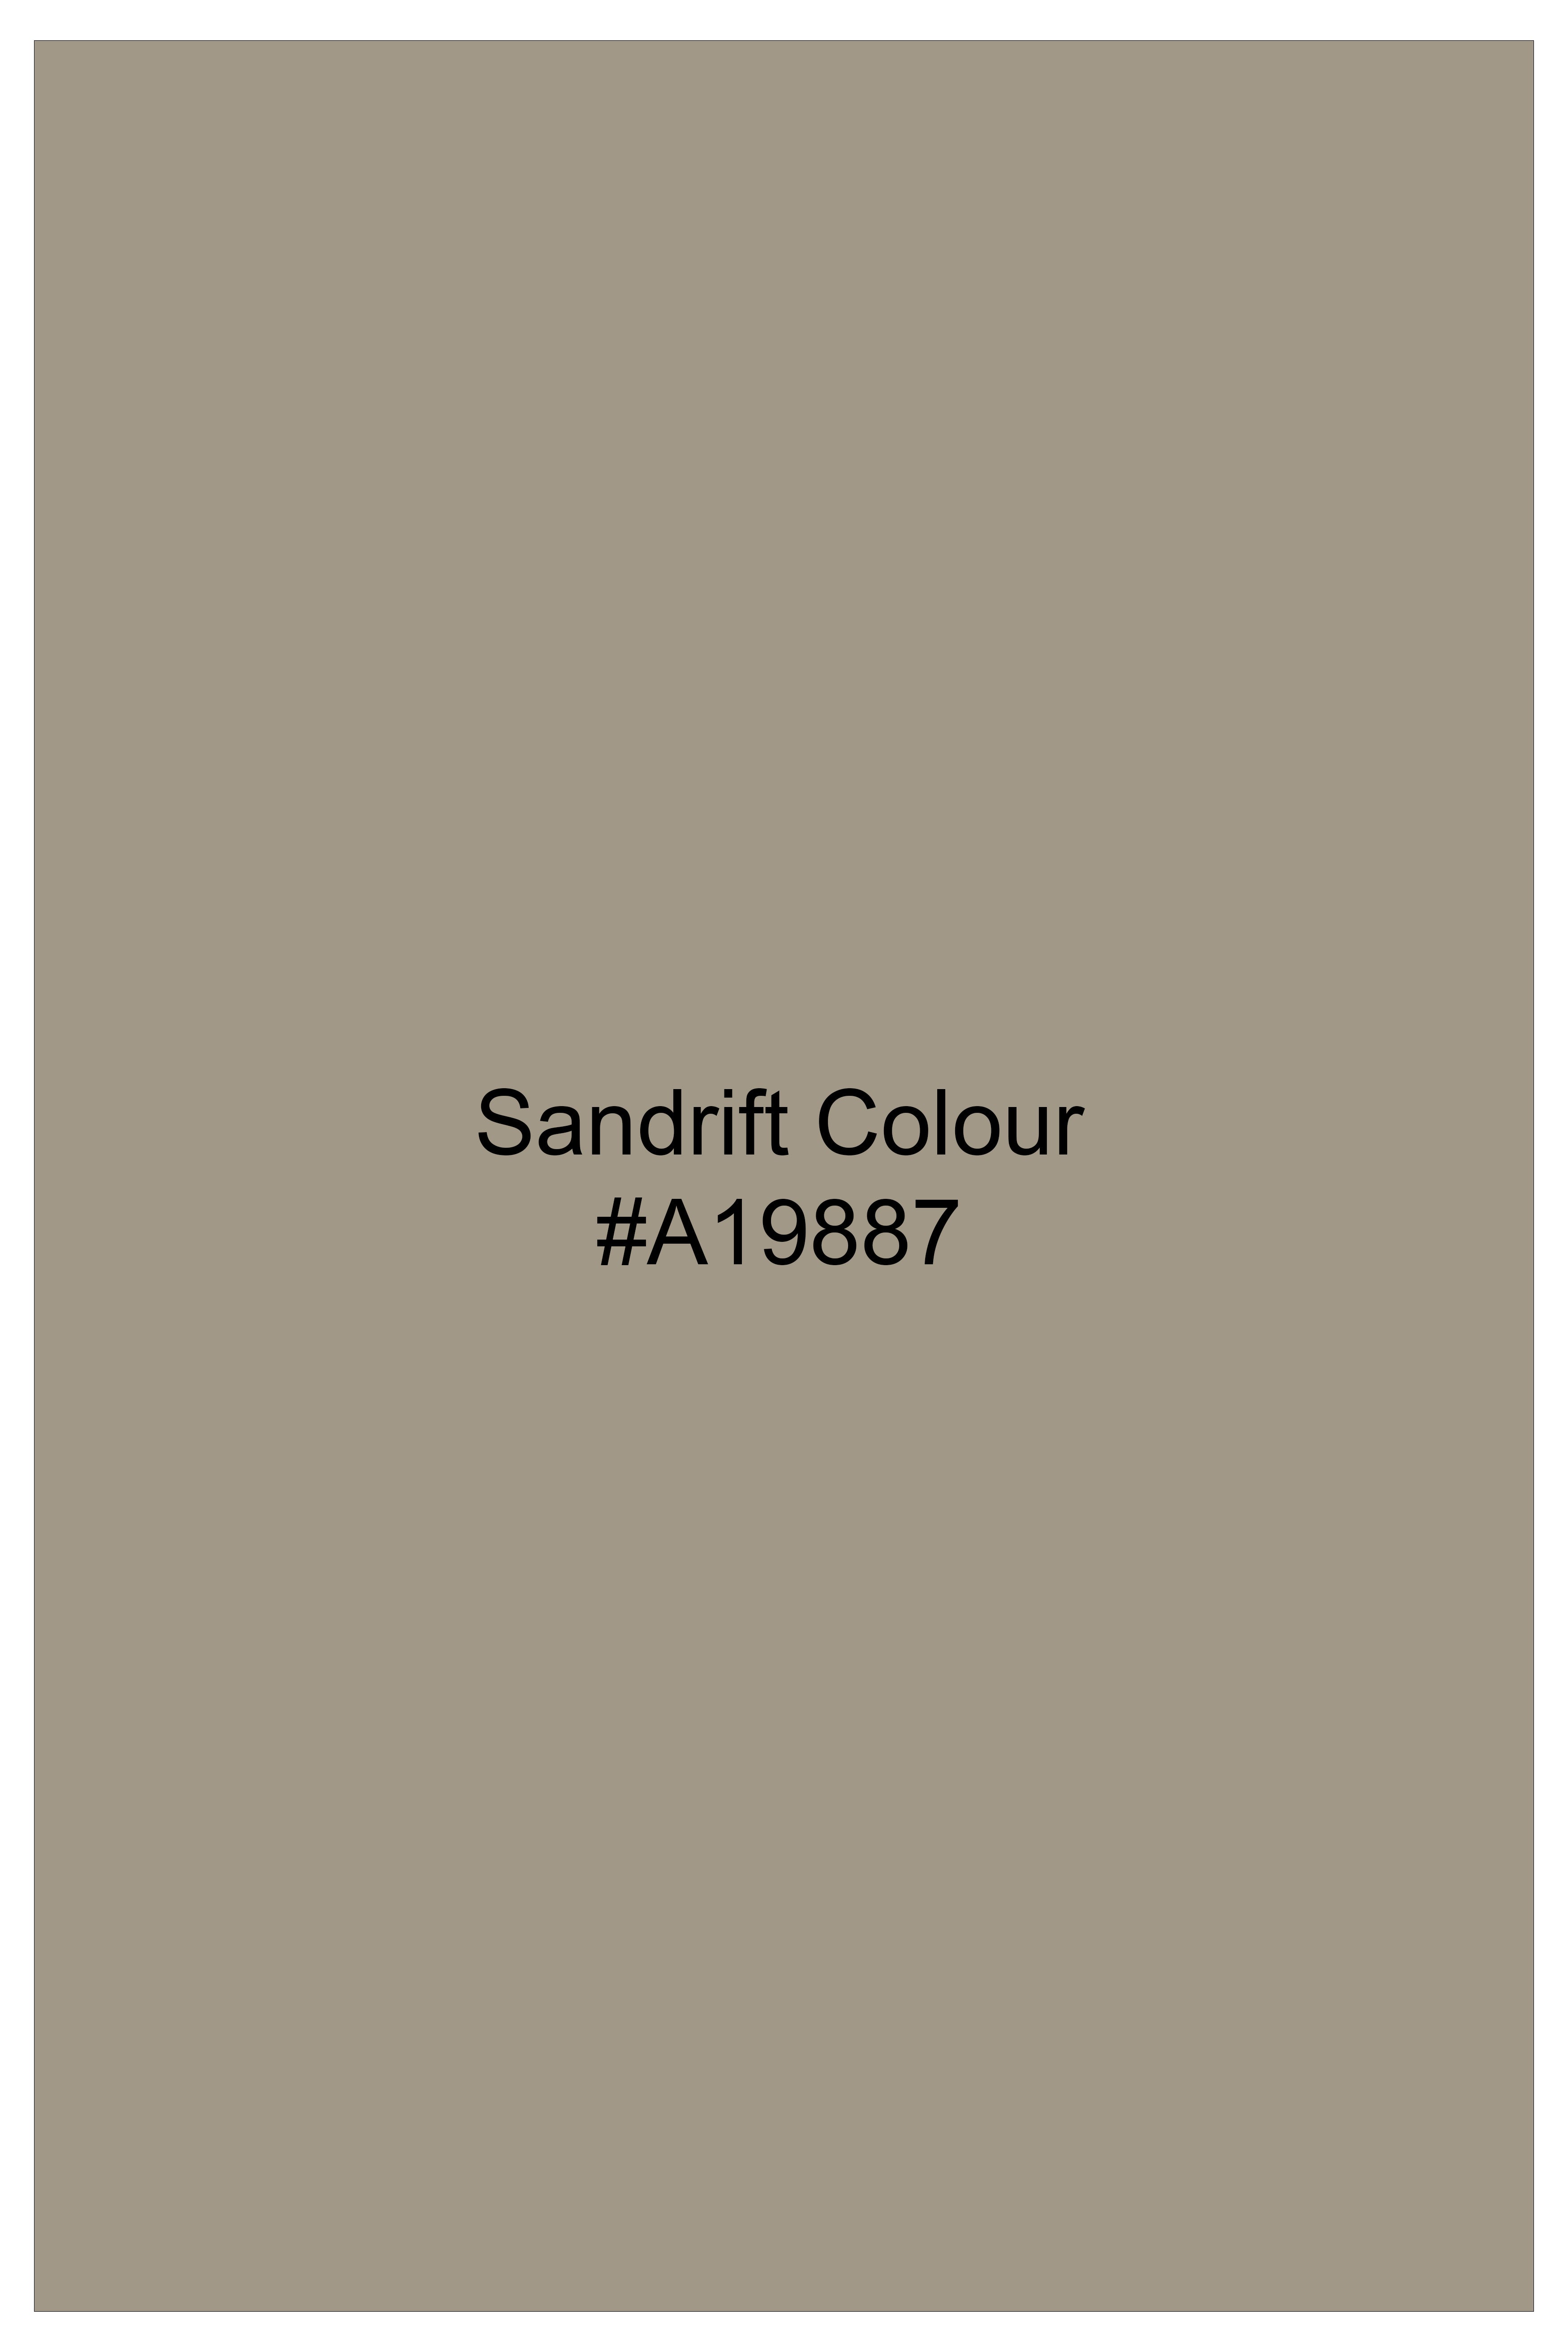 Sandrift Cream Plaid Wool Blend Tuxedo Suit